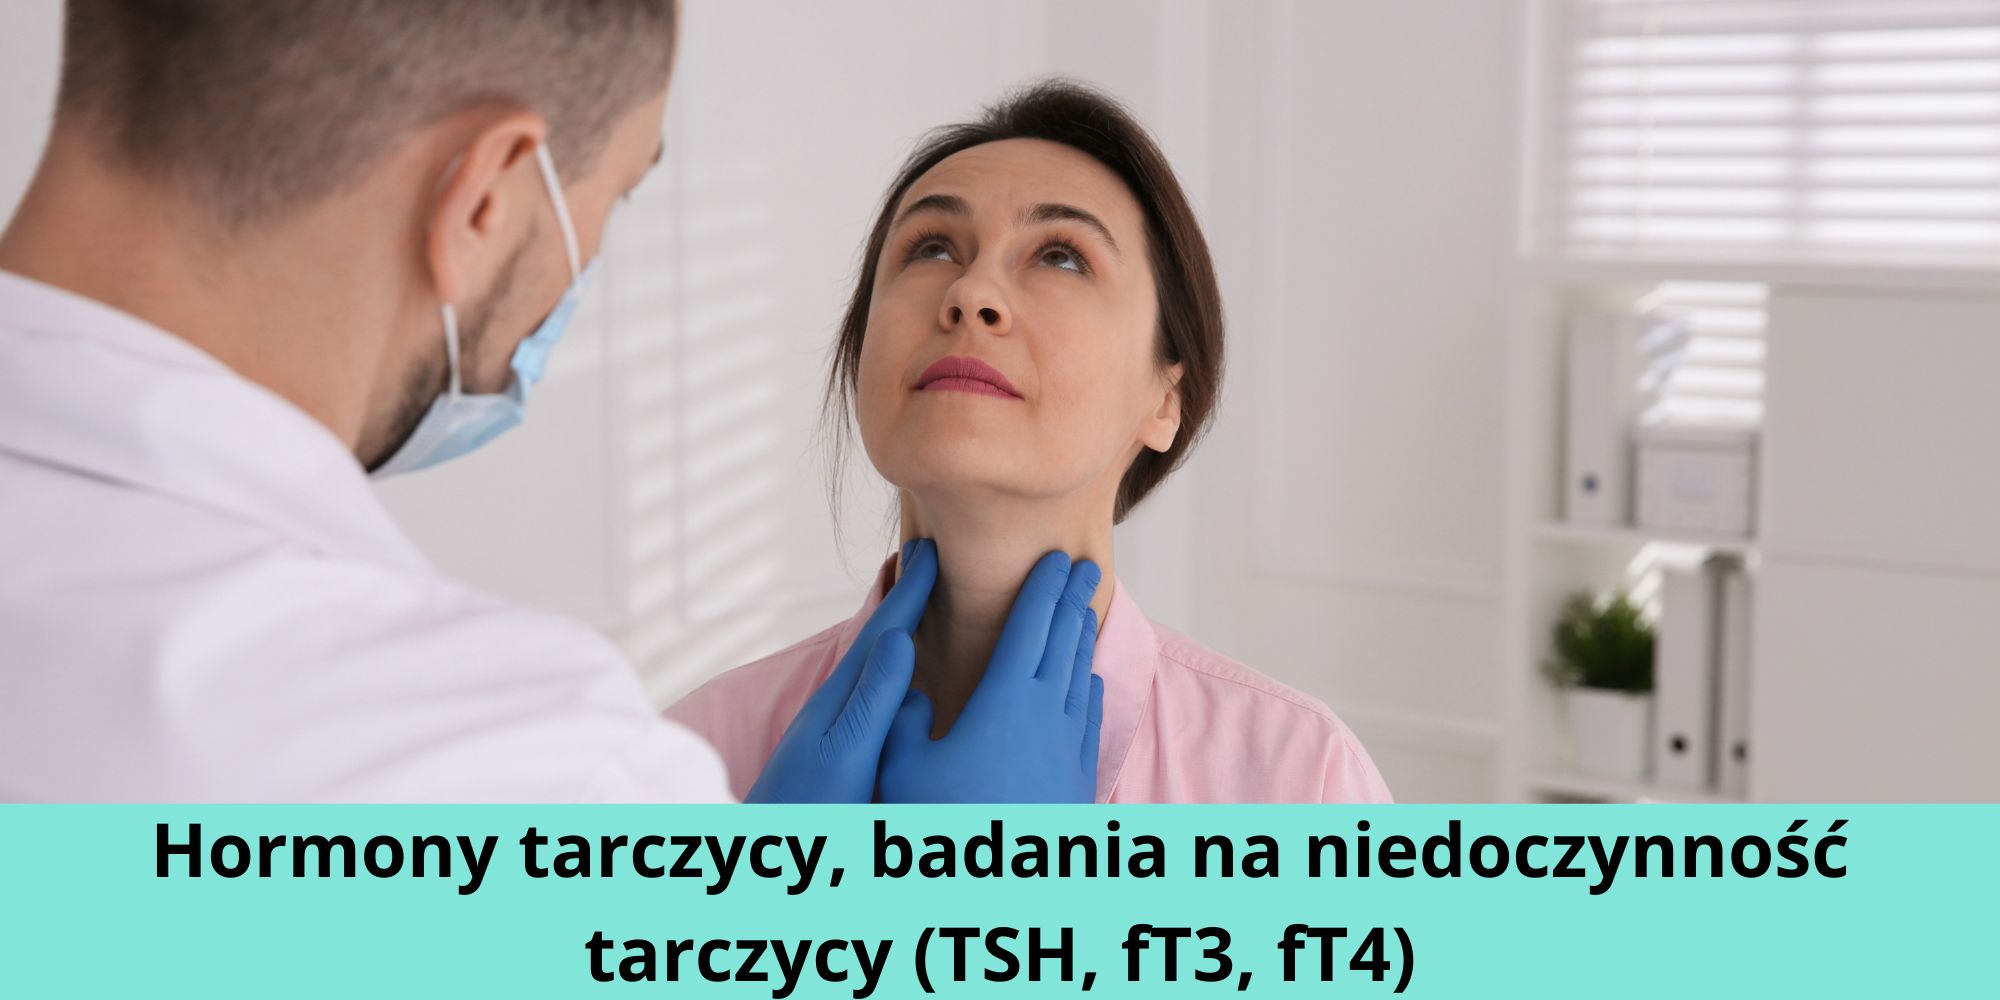 Hormony Tarczycy Badania Na Niedoczynność Tarczycy Tsh Ft3 Ft4 8445